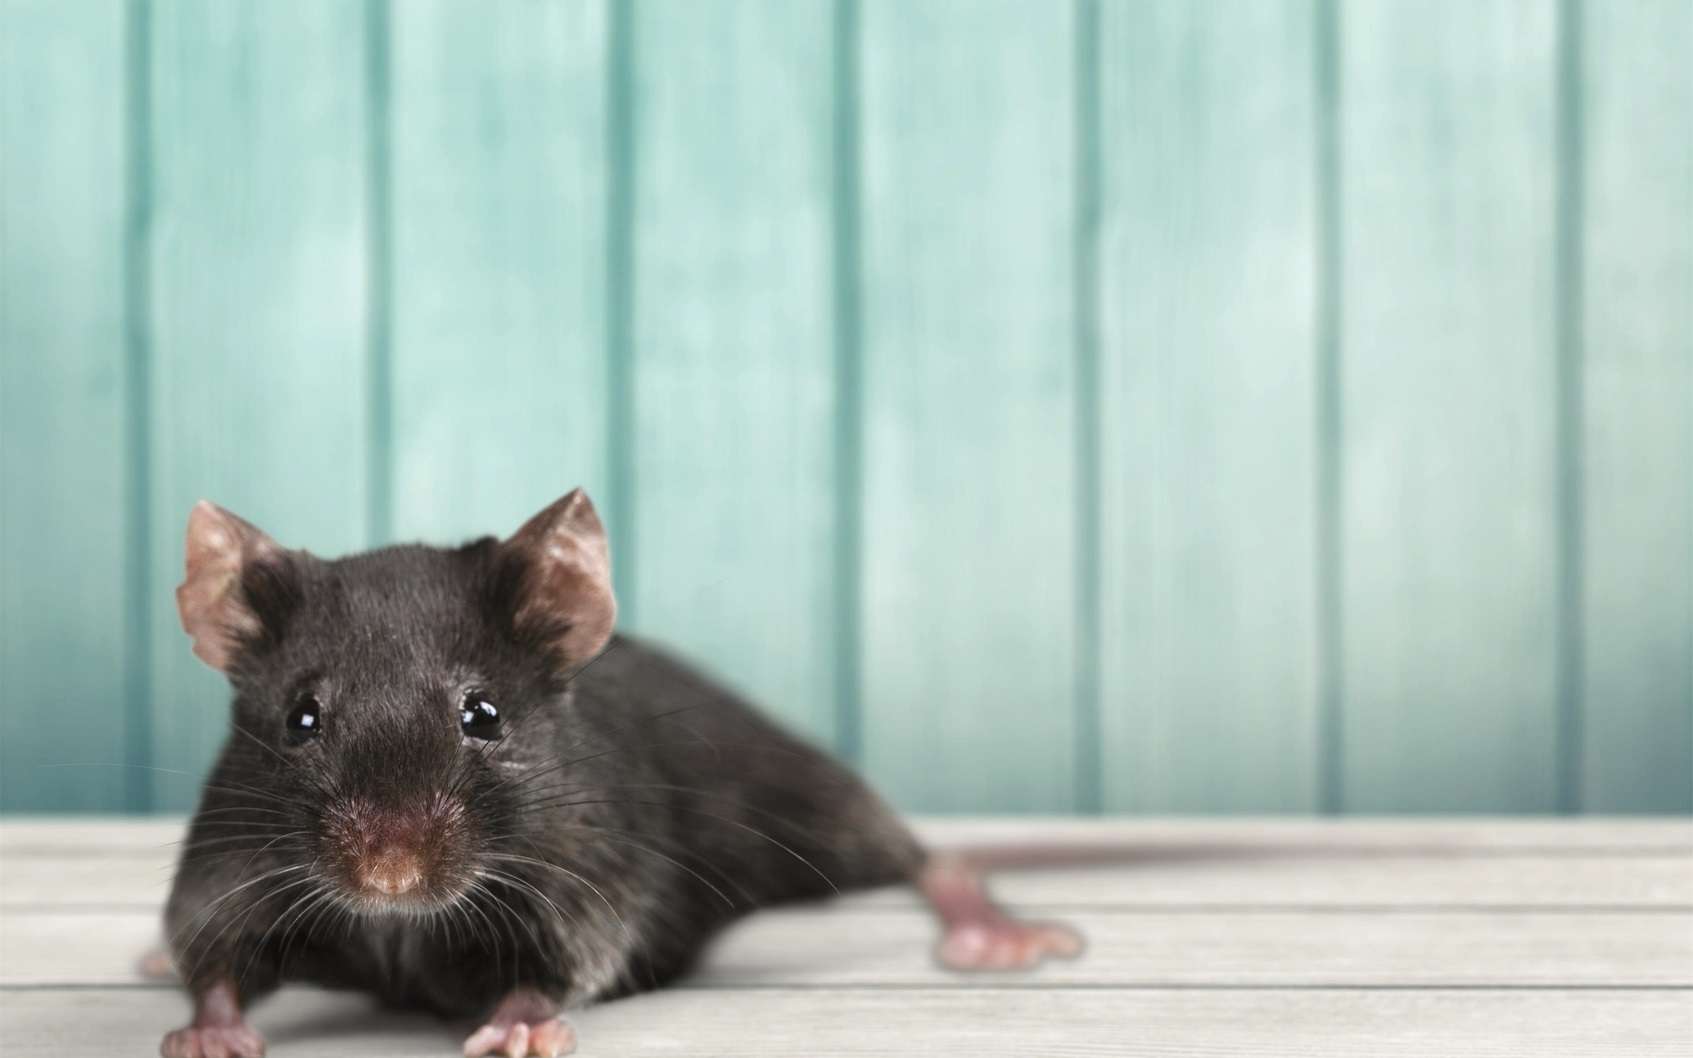 Des chercheurs ont réussi à reproduire, sur des souris, les symptômes de la progéria, un espoir dans la mise au point d'une thérapie génique contre cette maladie rare. © BillionPhotos.com, Fotolia